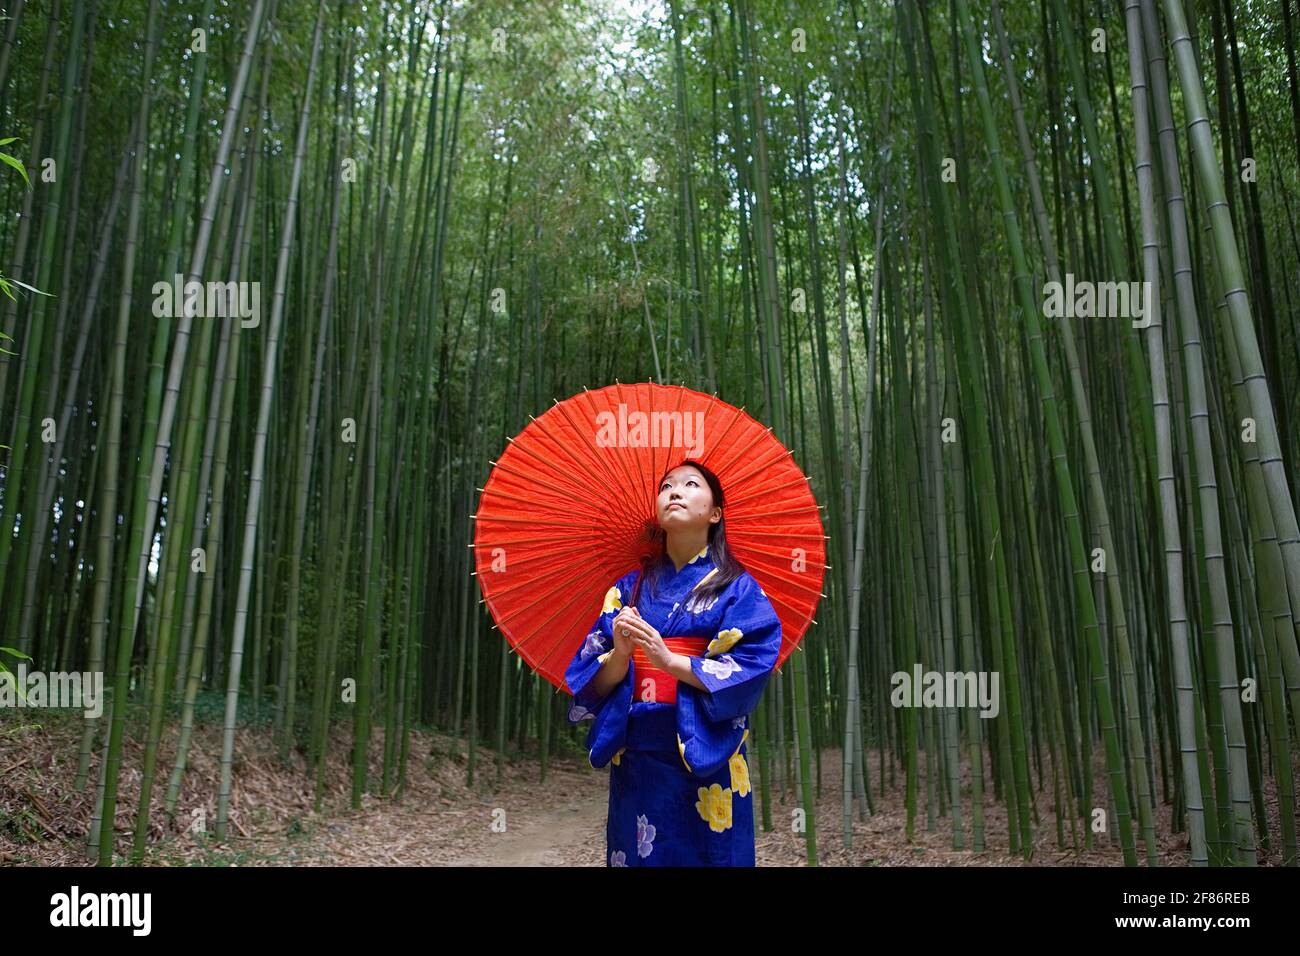 Junge Frau im Kimono mit Sonnenschirm und Blick auf Bambus Bäume Stockfoto